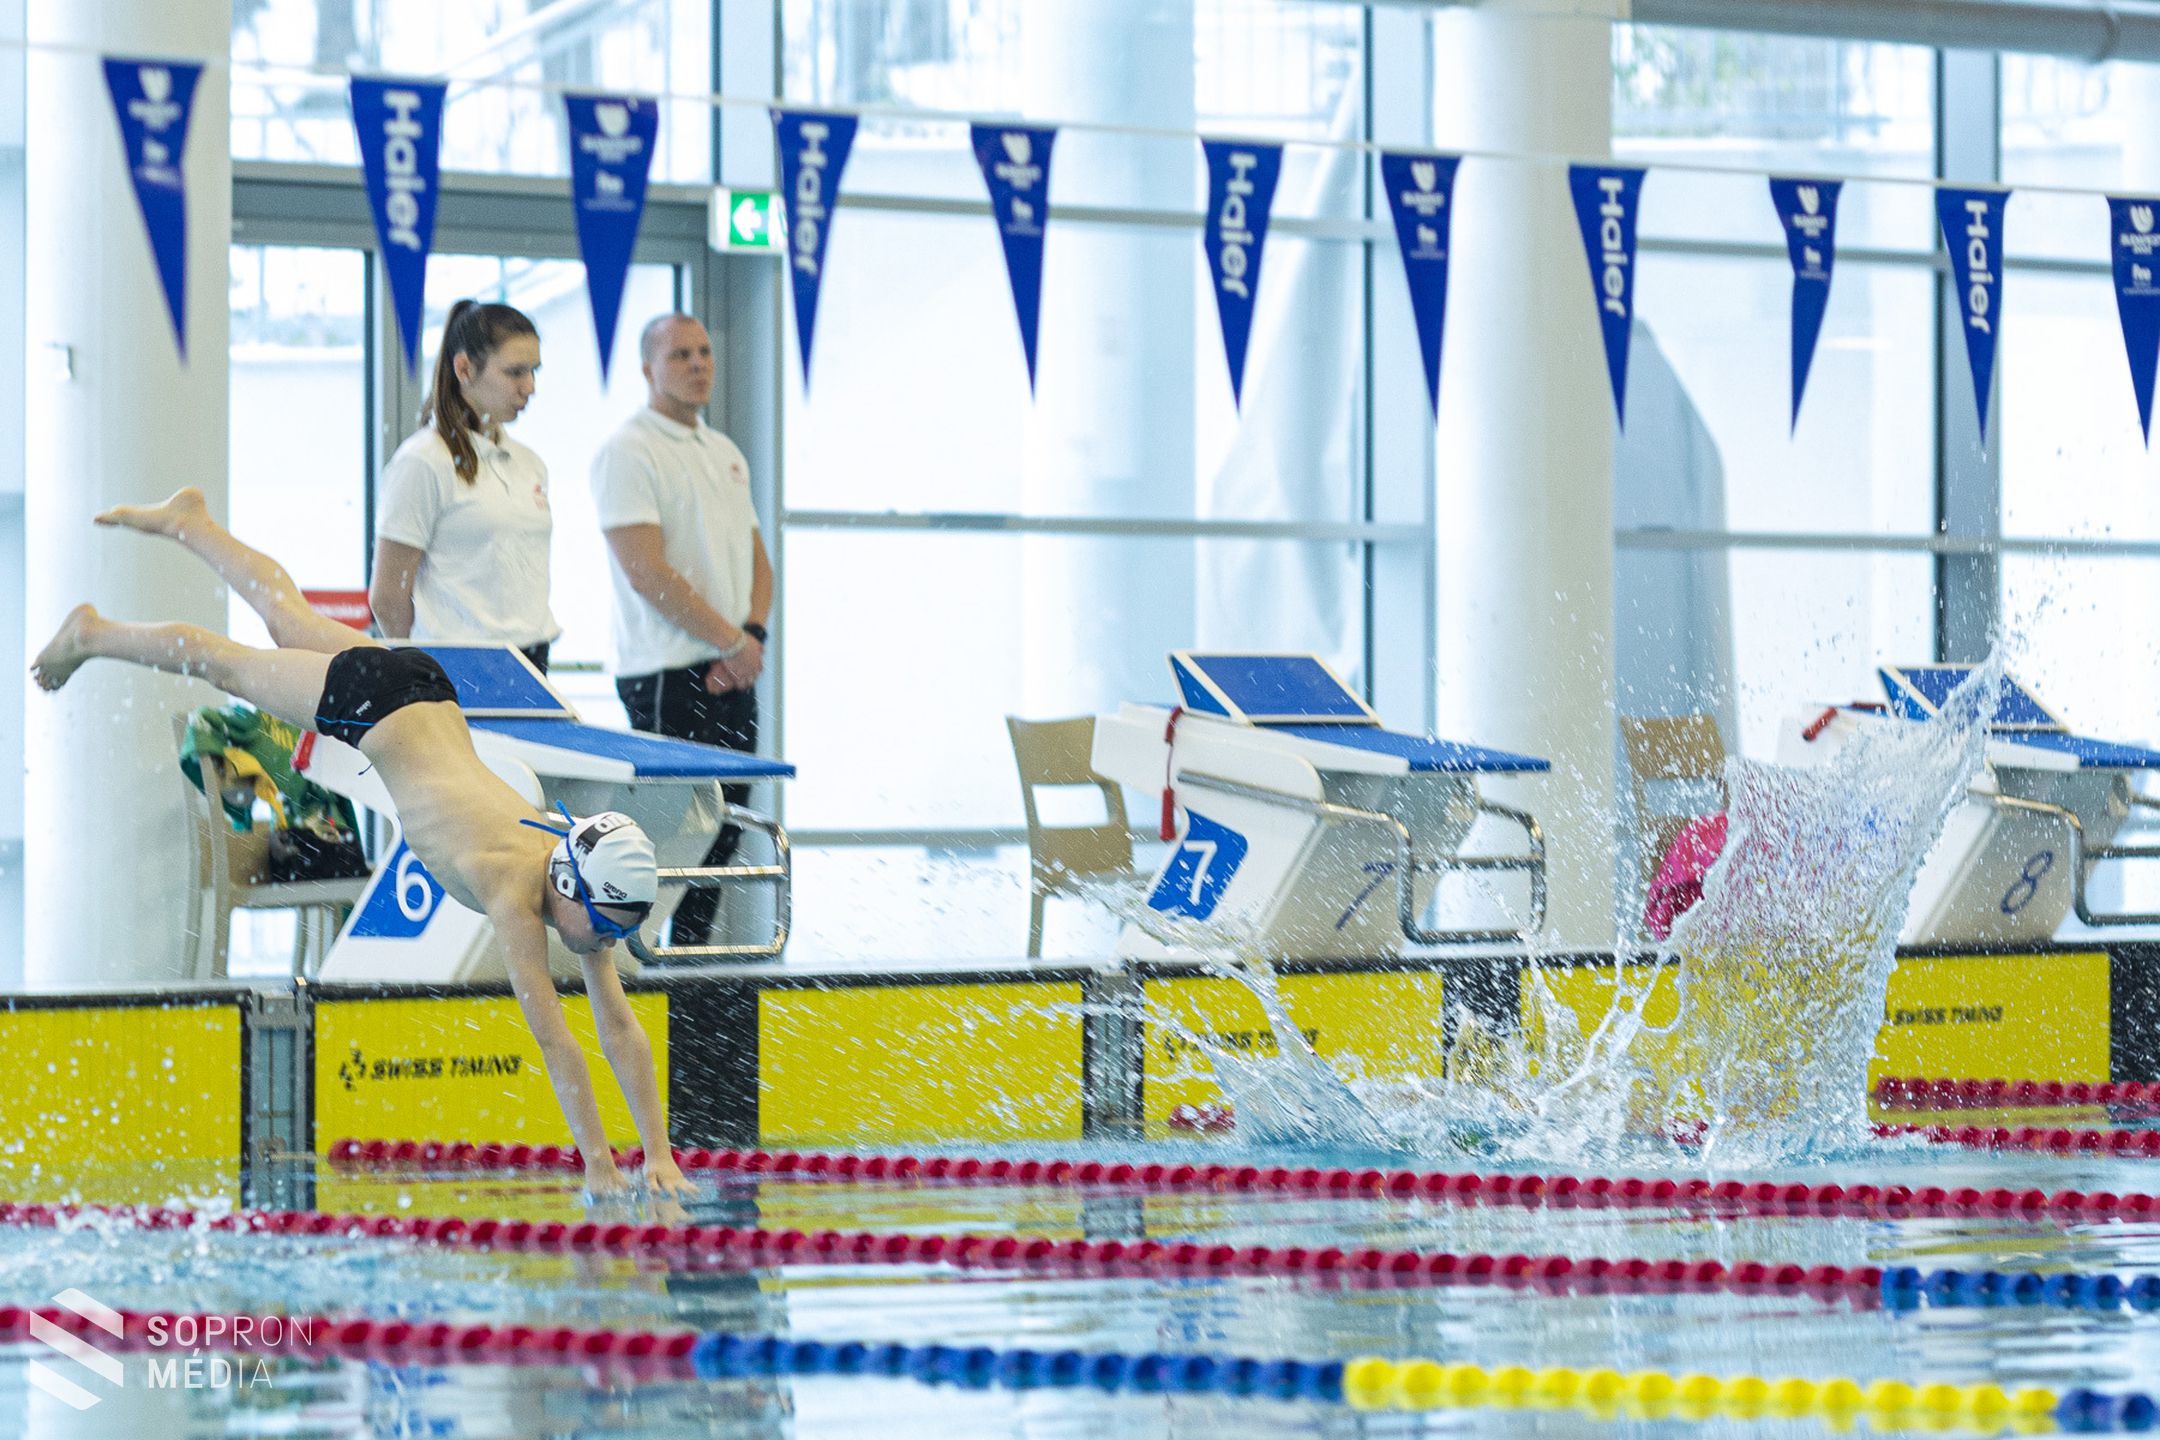 Diákolimpián mérték össze a tudásukat az úszók